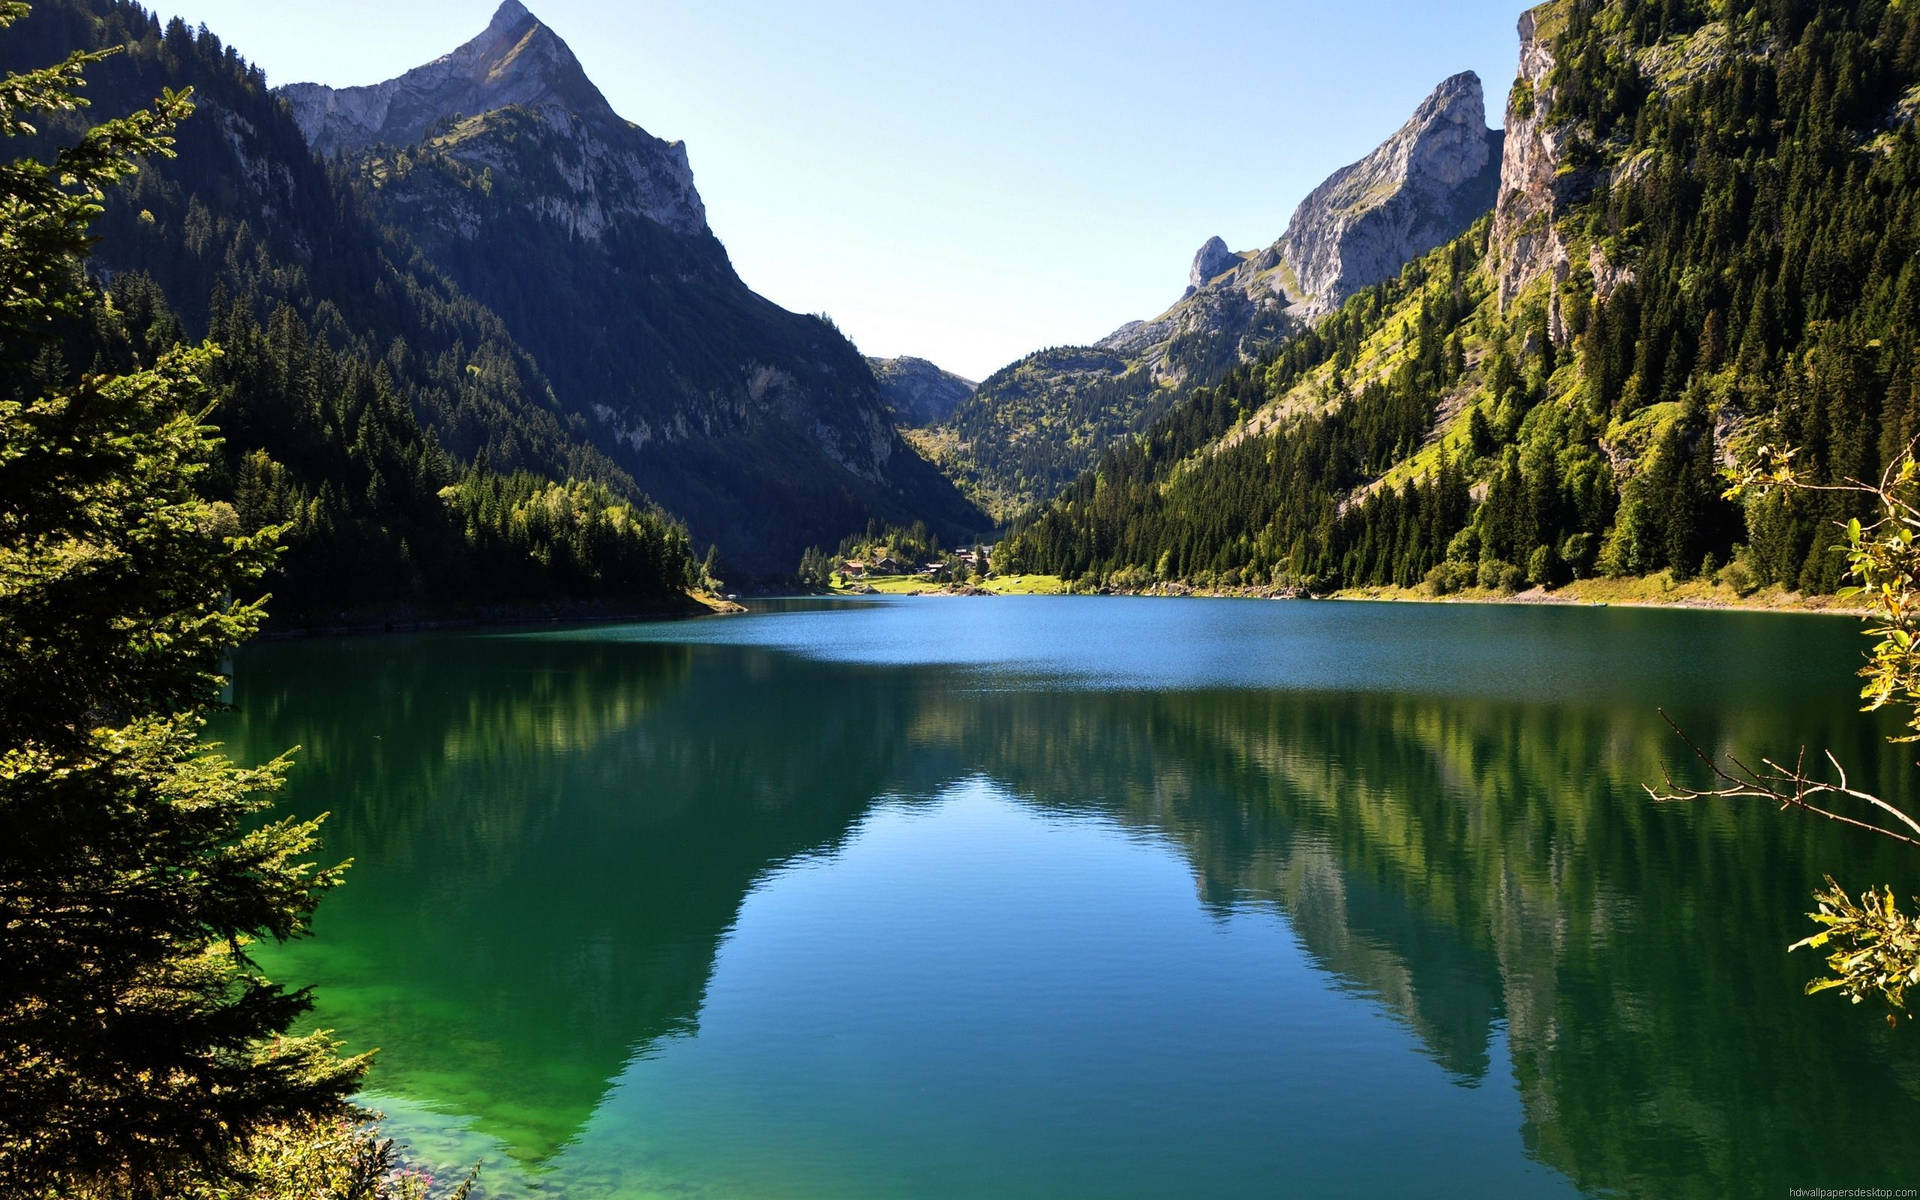 Sumérgeteen La Belleza De Las Majestuosas Montañas Con Una Vista Relajante. Fondo de pantalla